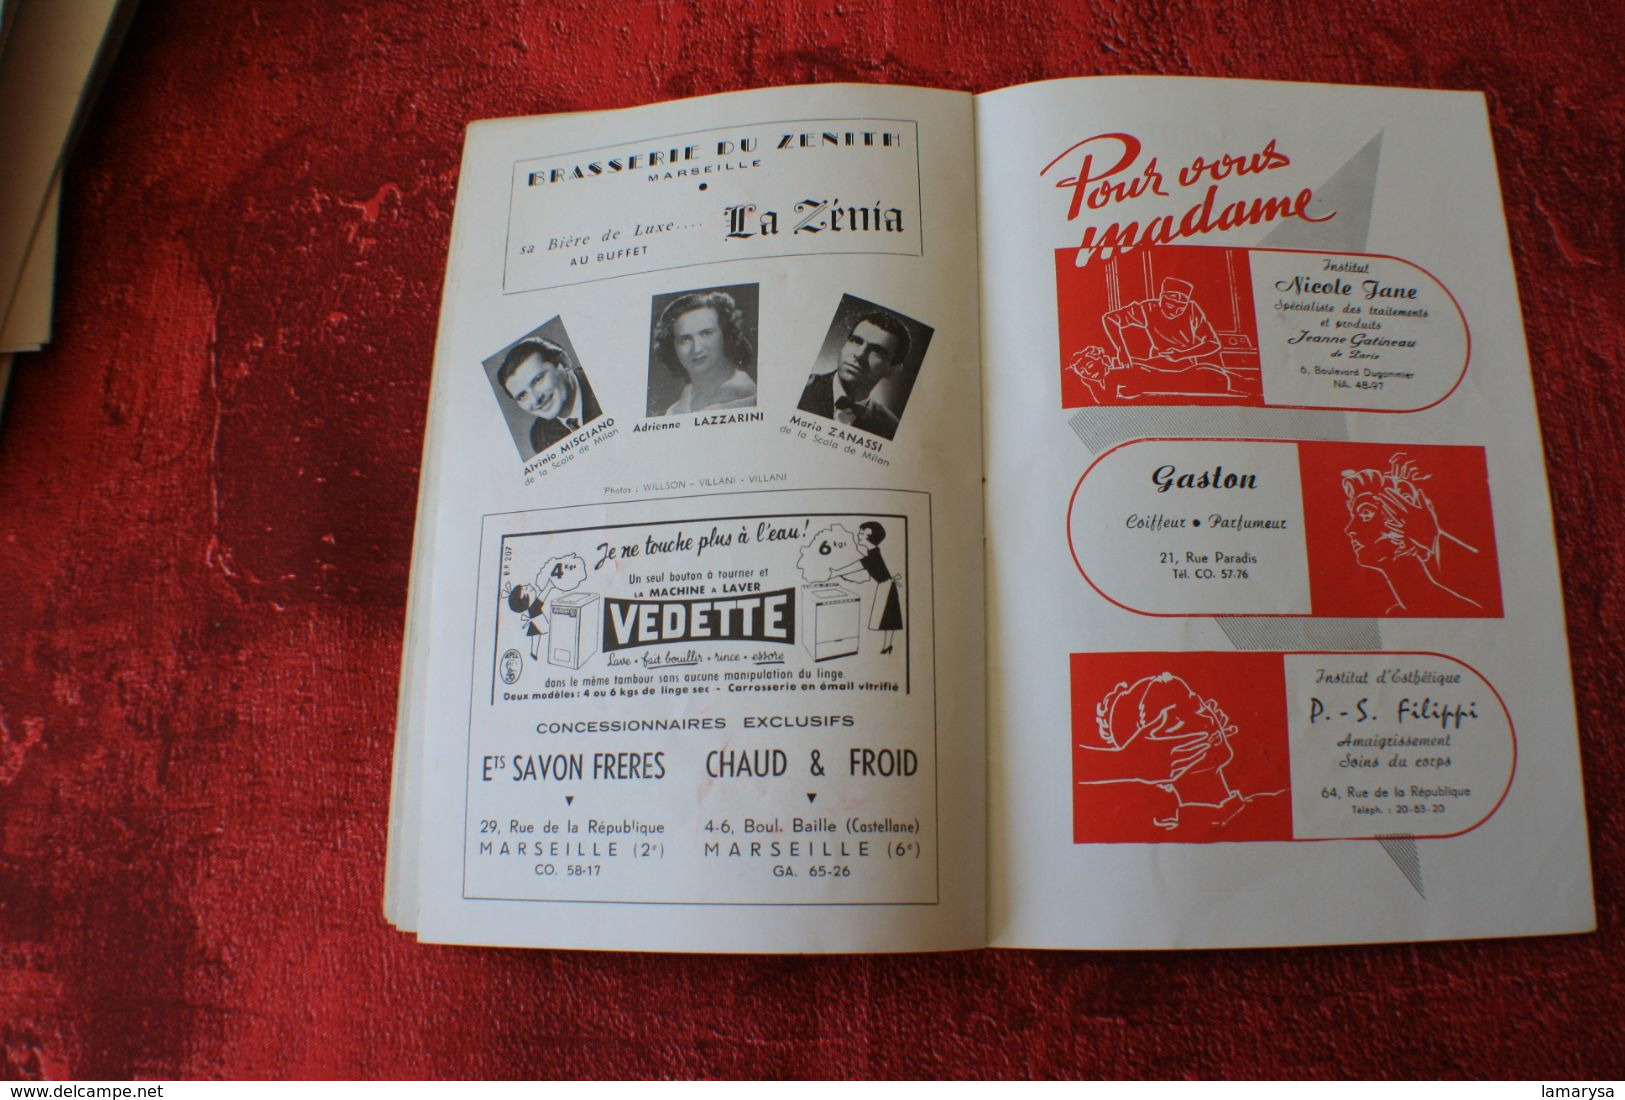 FABULEUX" THE PLATTERS " 2+1 VÉRITABLES AUTOGRAPHE DÉDICACE-OPÉRA MARSEILLE 1957-PIERRE PERRET-PAULETTE ROLLIN-